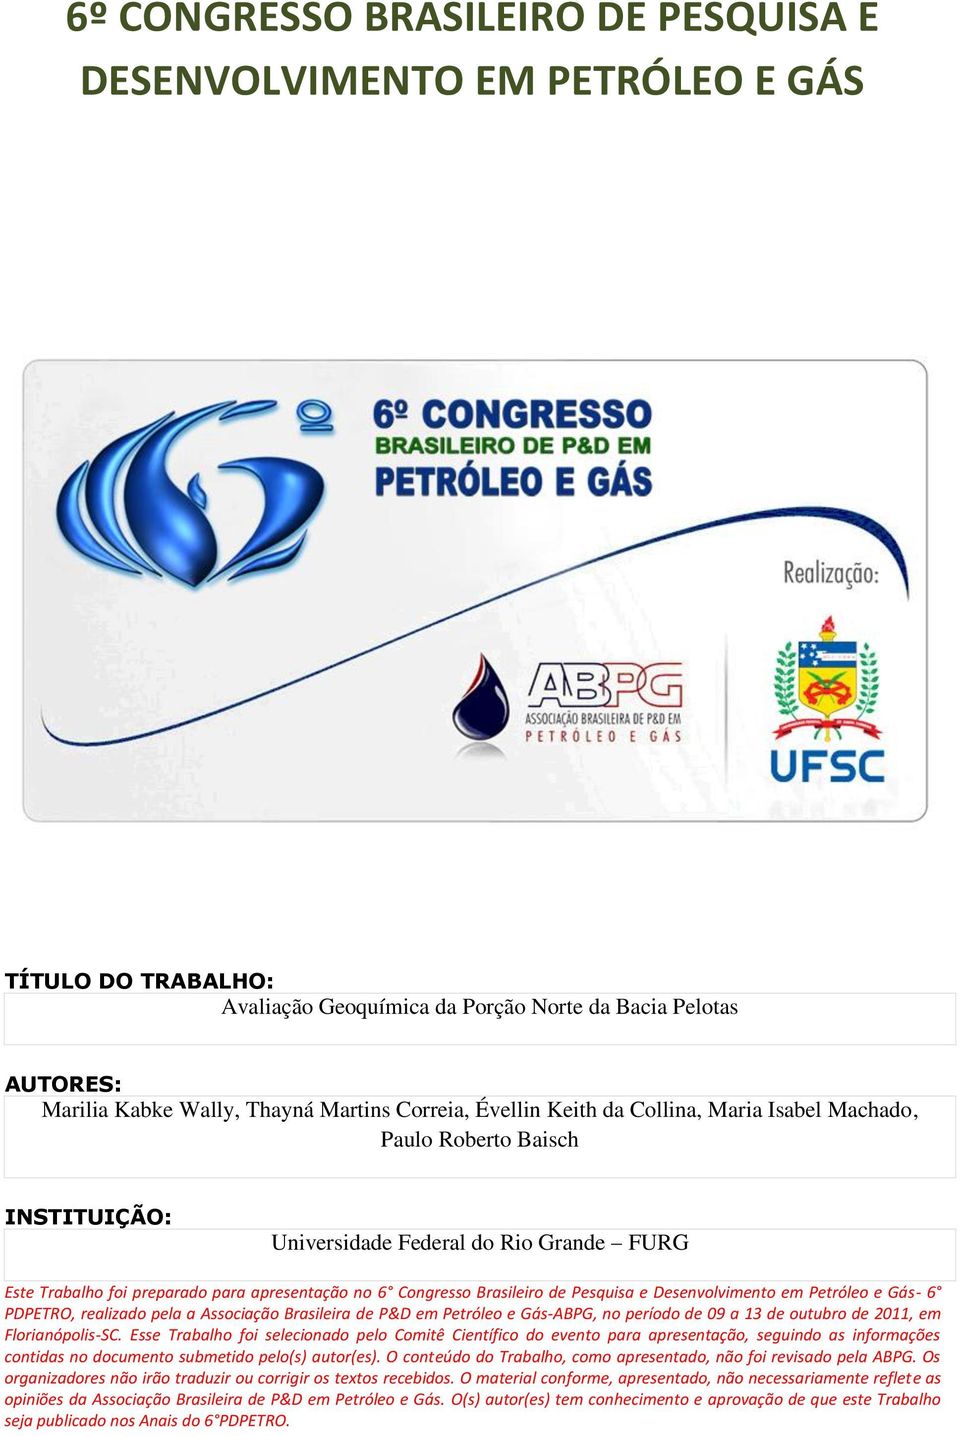 Pesquisa e Desenvolvimento em Petróleo e Gás- 6 PDPETRO, realizado pela a Associação Brasileira de P&D em Petróleo e Gás-ABPG, no período de 09 a 13 de outubro de 2011, em Florianópolis-SC.